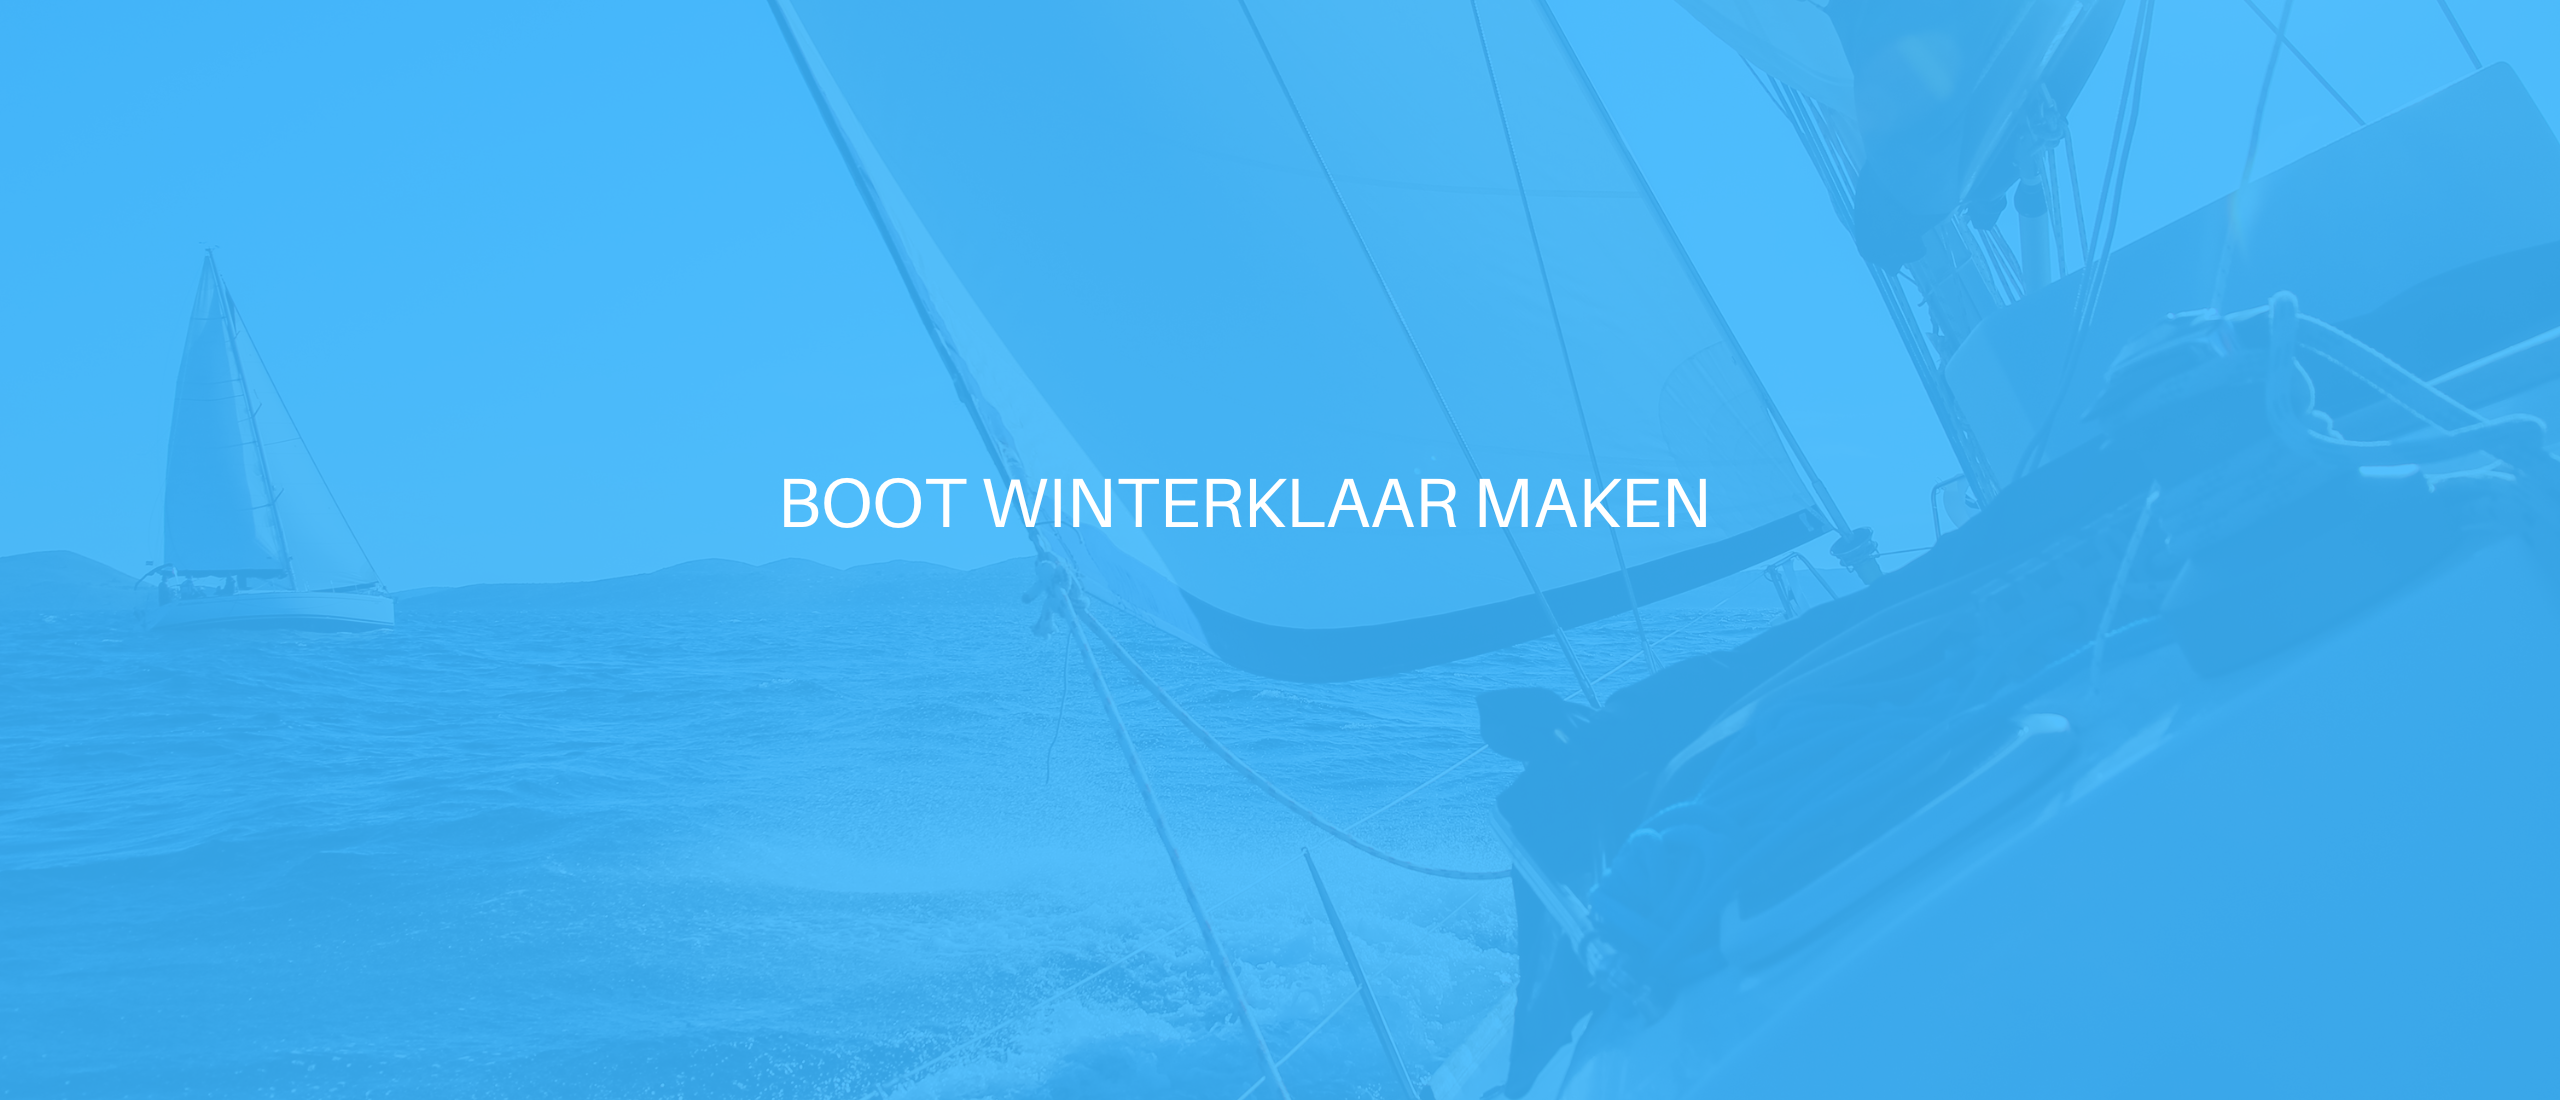 Boot winterklaar maken